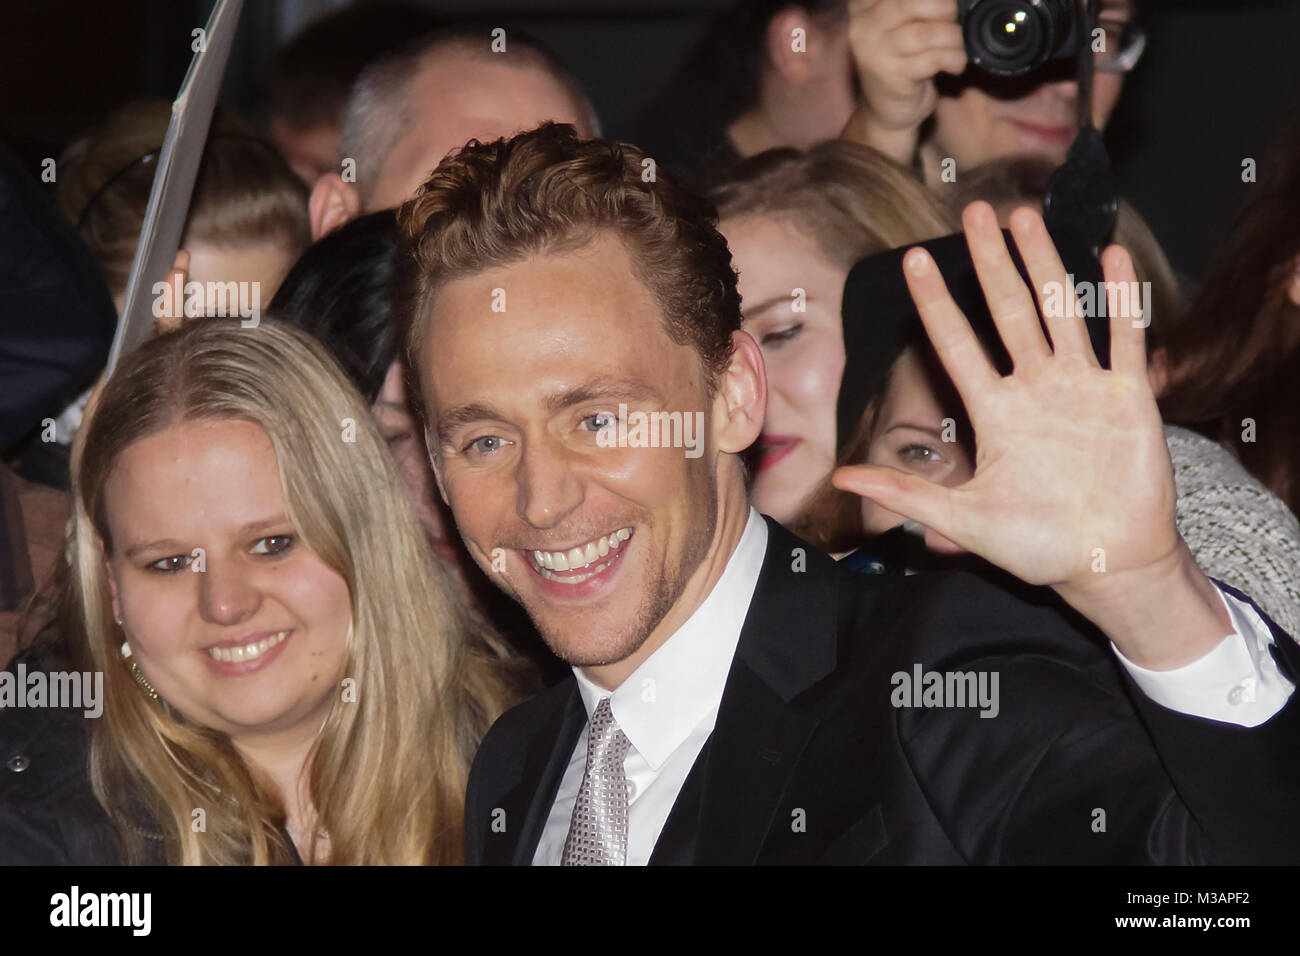 Tom Hiddleston auf dem roten Teppich bei der deutschlandpremiere von-Thor - Königreich des Dunklen - im CineStar Kino im Berliner Sonycenter. Stockfoto